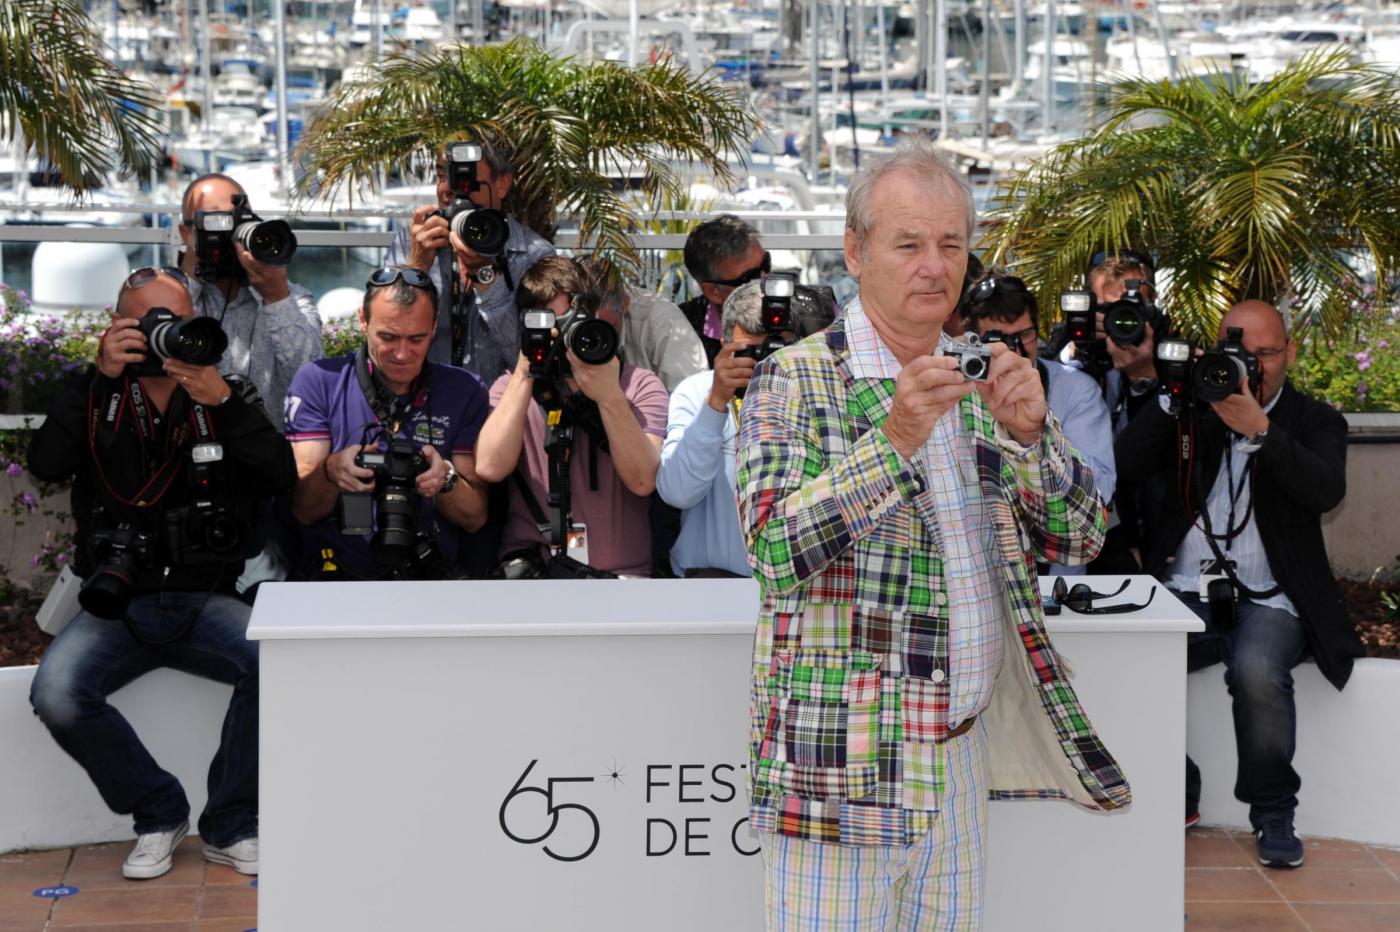 Festival del cinema di Cannes, photocall del film "Moonrise kingdom"13